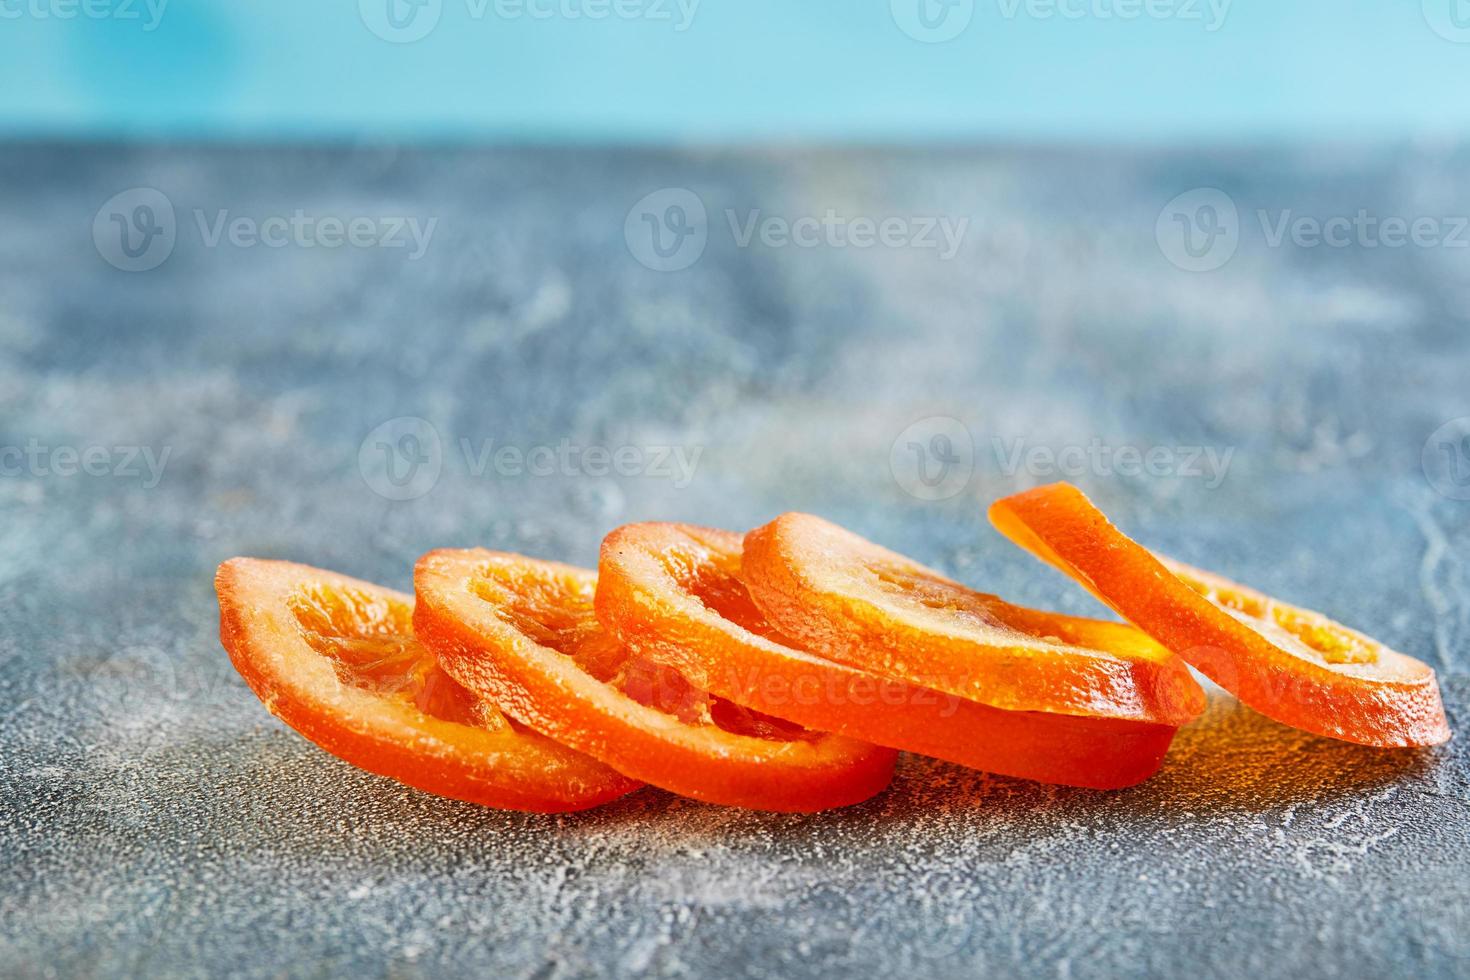 schijfjes gedroogde sinaasappels of mandarijnen op een blauwe achtergrond foto